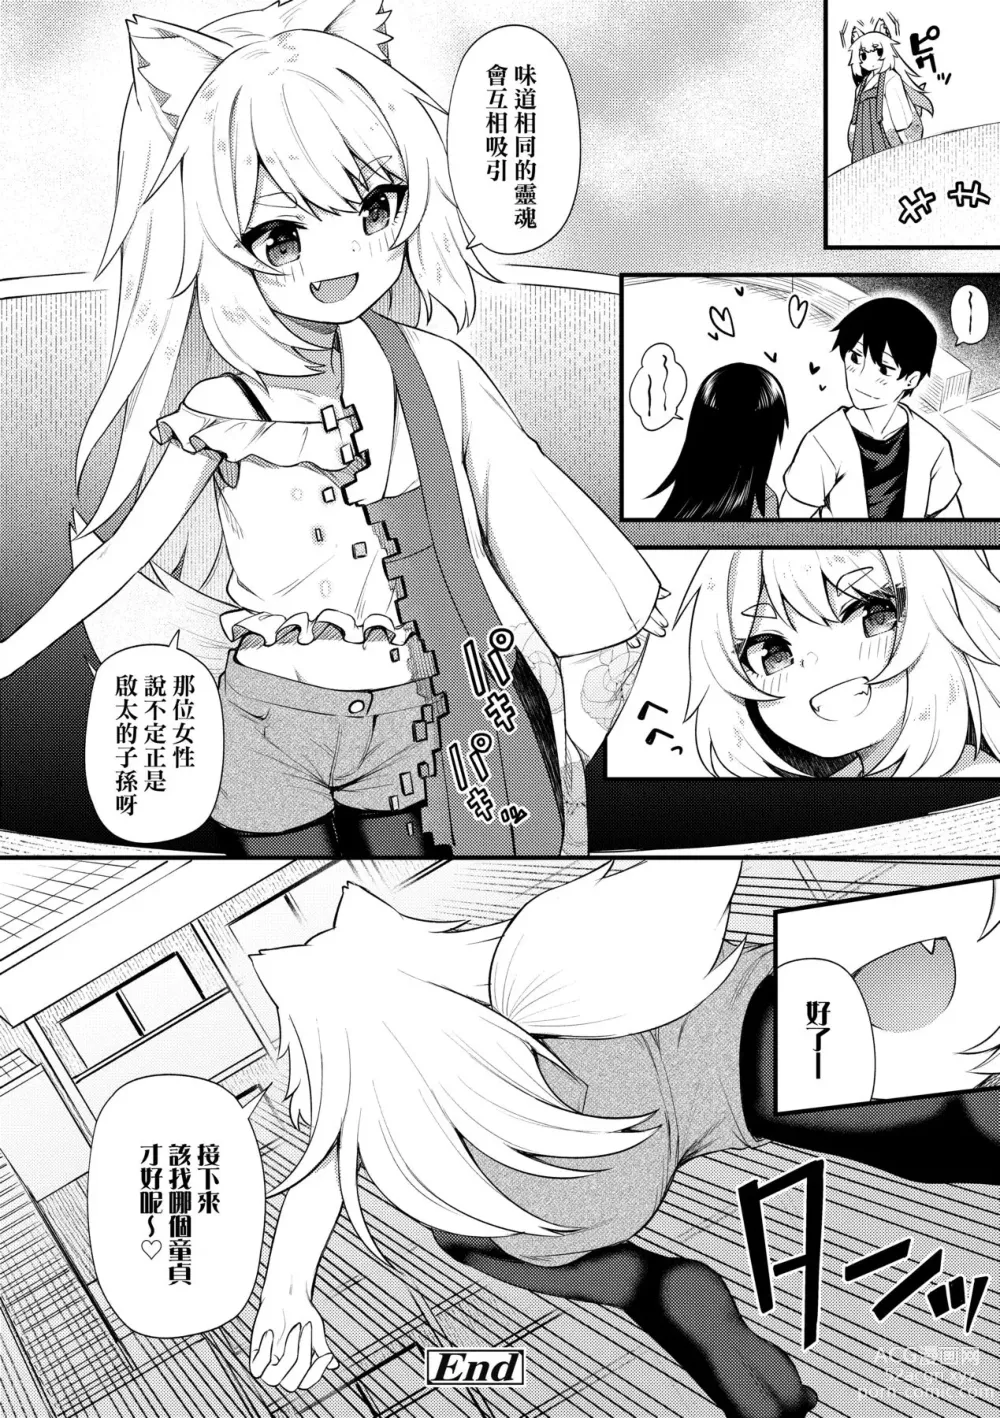 Page 195 of manga Chojyu Giga (decensored)